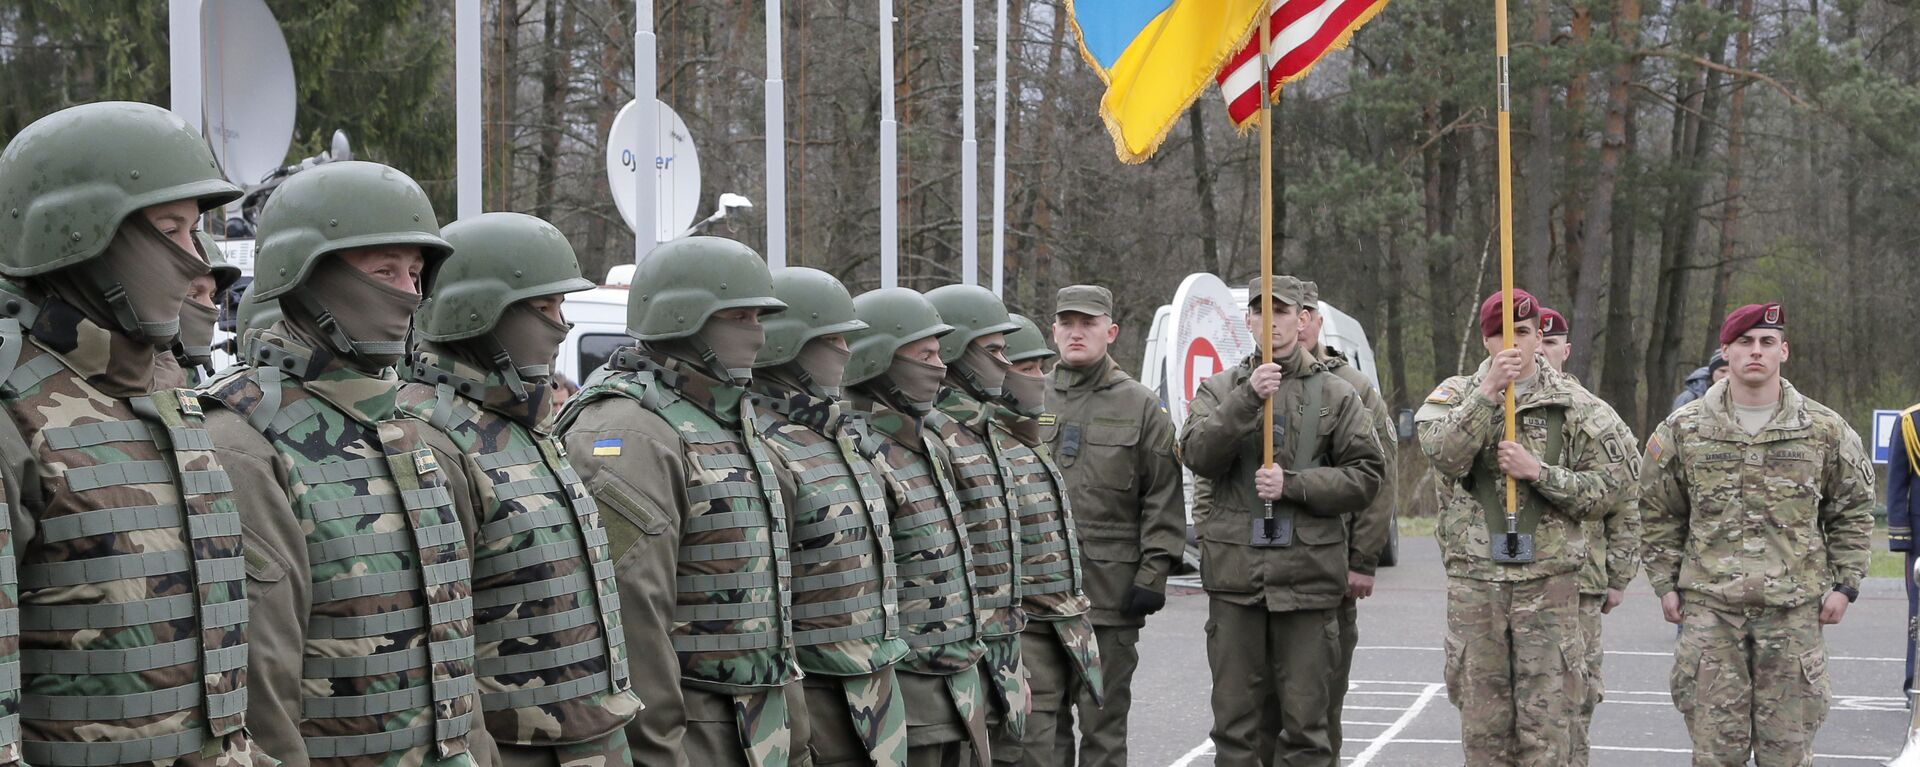 Soldados ucranianos y estadounidenses en la región de Lviv, Ucrania (archivo) - Sputnik Mundo, 1920, 22.09.2022